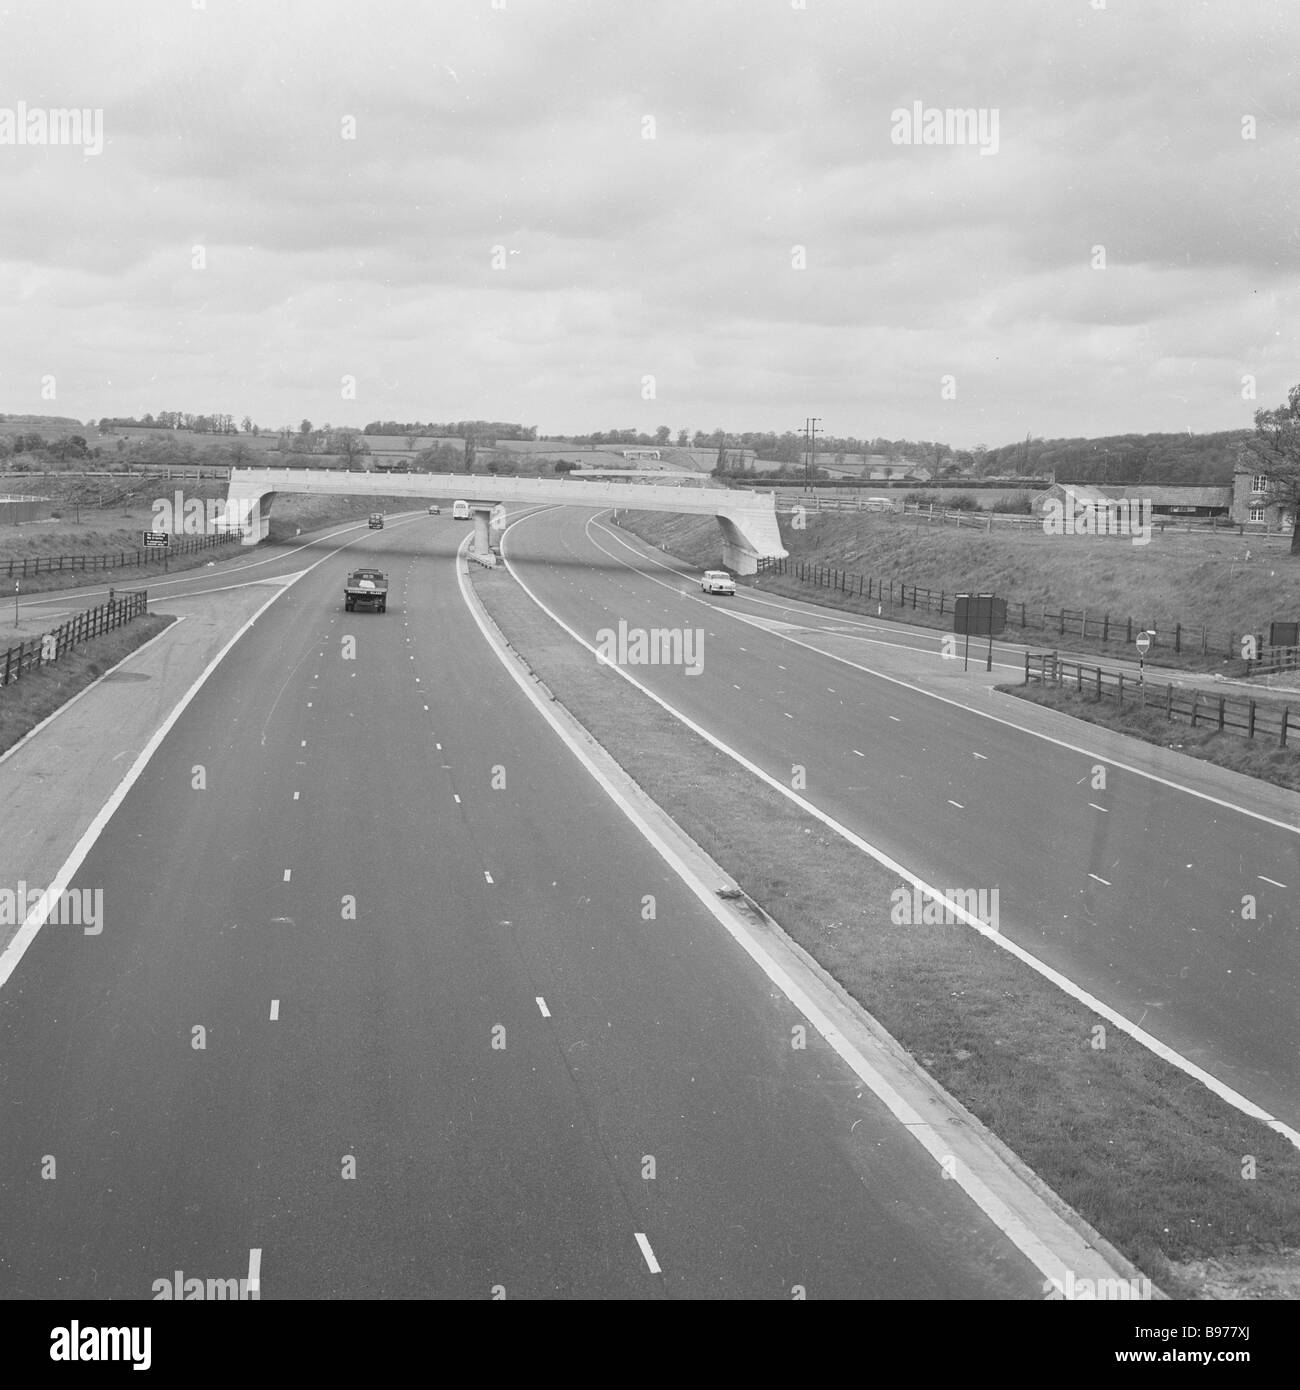 1960s, historisch, eine fast leere Autobahn aus dem Jahr M1, die vor kurzem gebaut wurde und die erste zweispurige Autobahn in Großbritannien, die über eine ganze Länge zwischen den Städten verläuft. Stockfoto